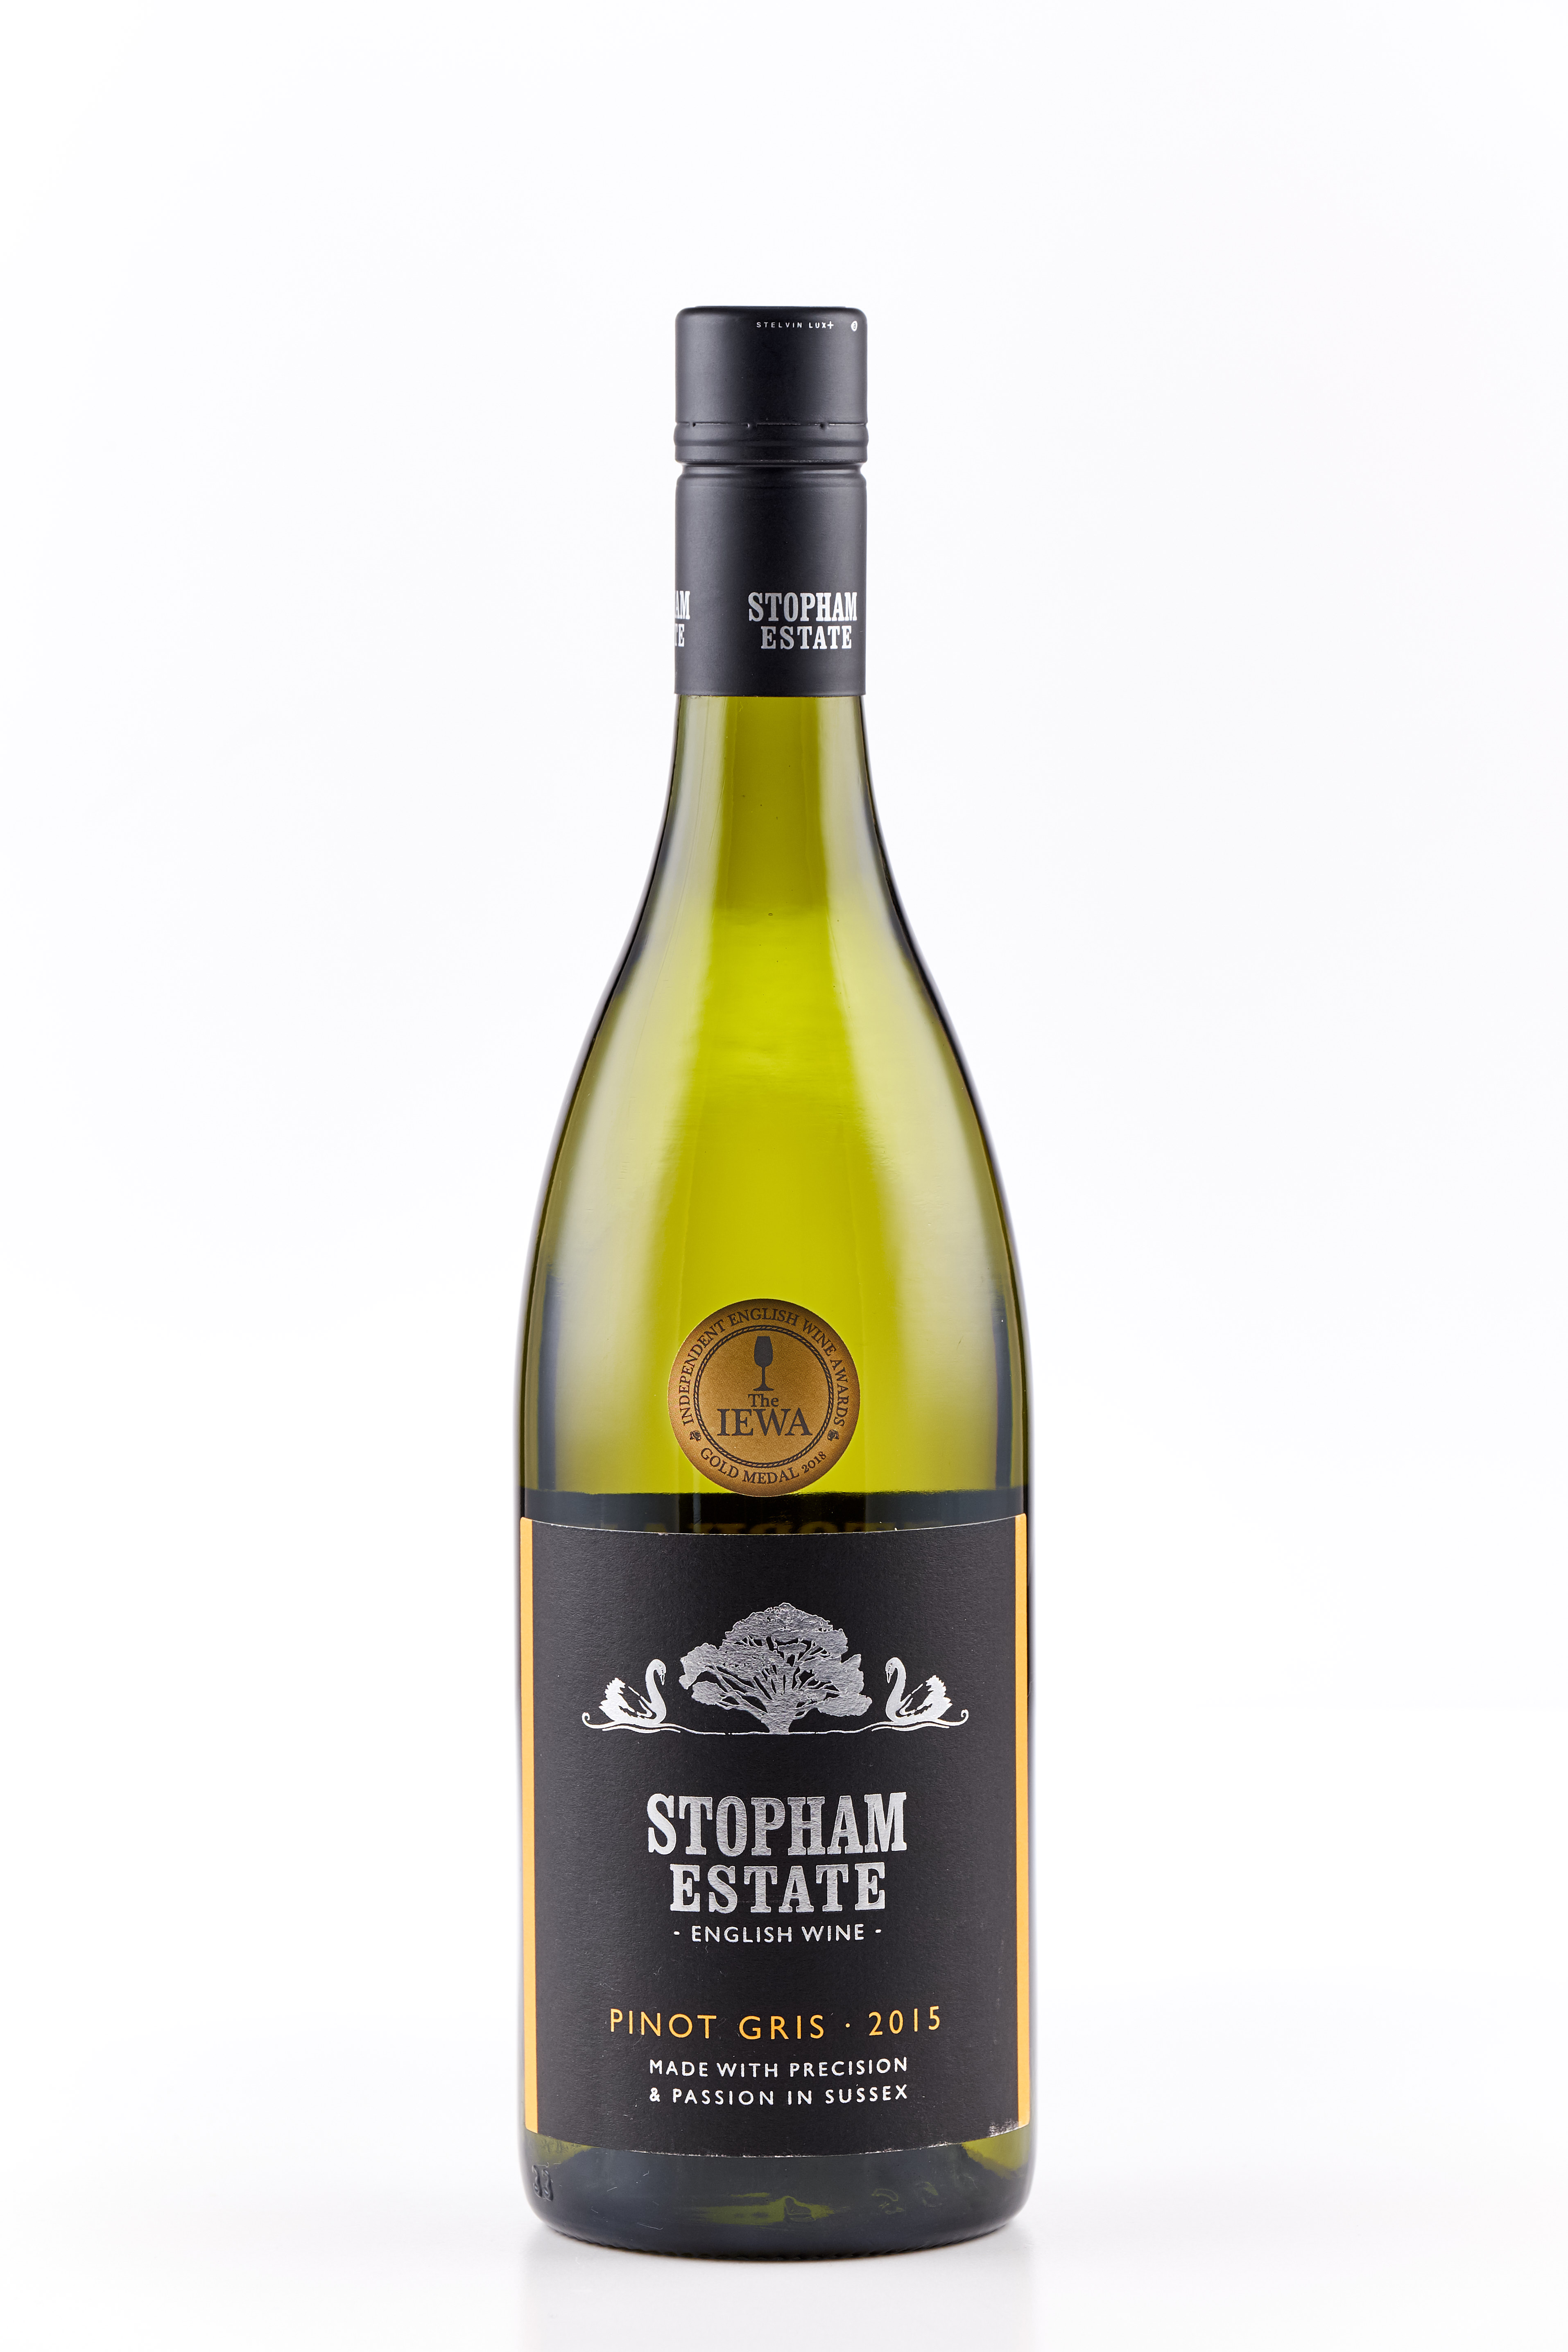 Stopham wine